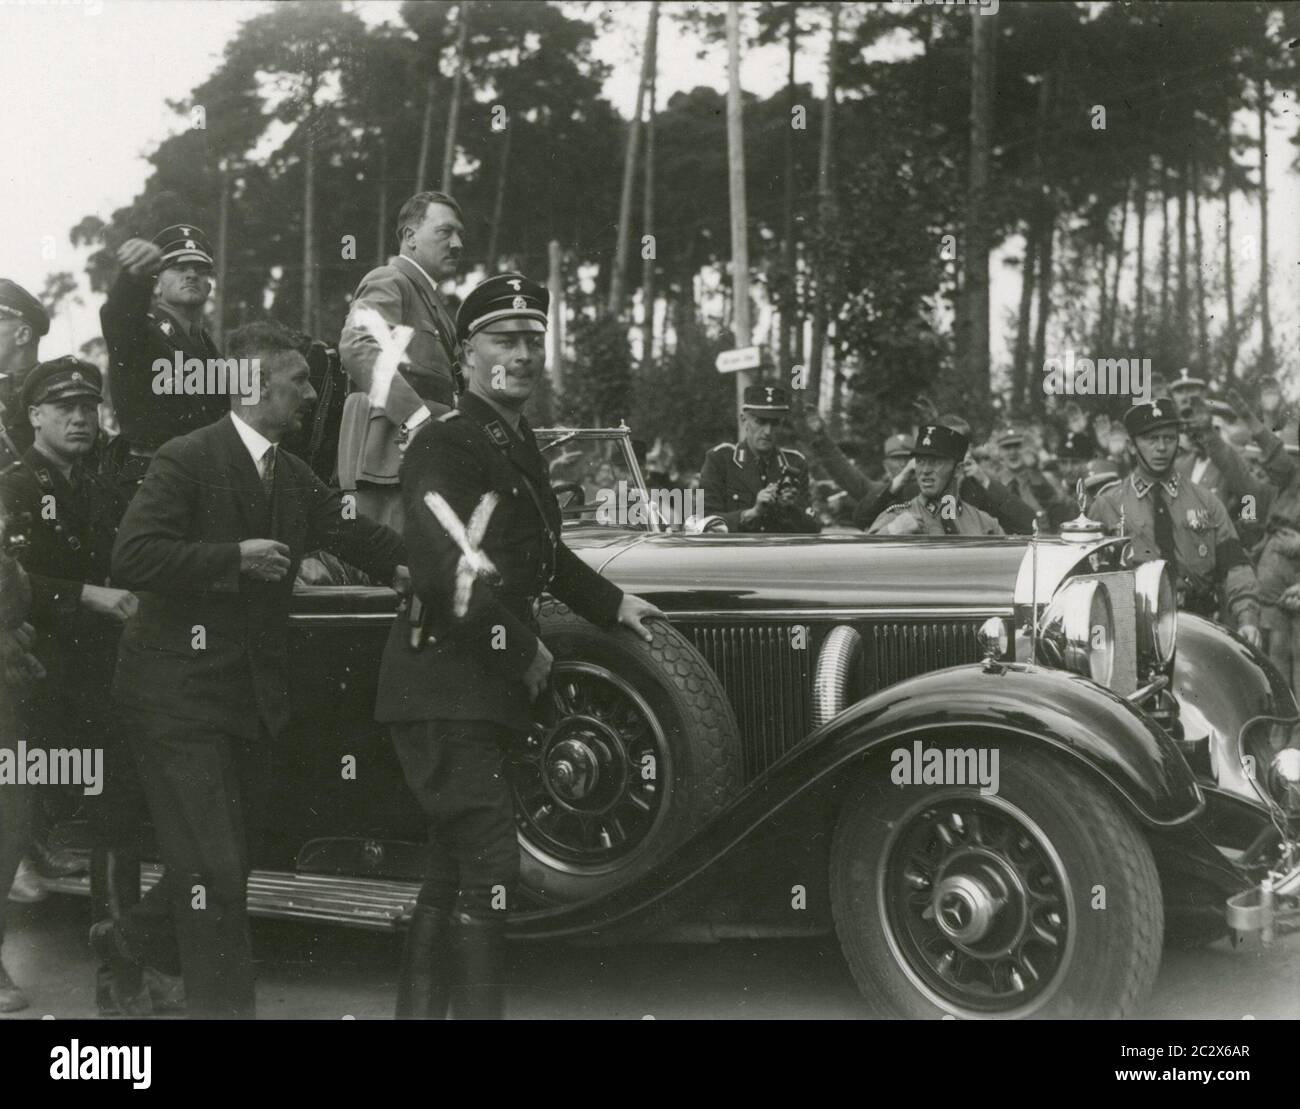 Foto del Partito nazista Rally nel 1933 a Nuernberg - Hitler visita il campo delle SS - Hitler e Himmler Heinrich Hoffmann Fotografie 1933 fotografo ufficiale di Adolf Hitler, e un politico nazista e editore, che era un membro del circolo intimo di Hitler. Foto Stock